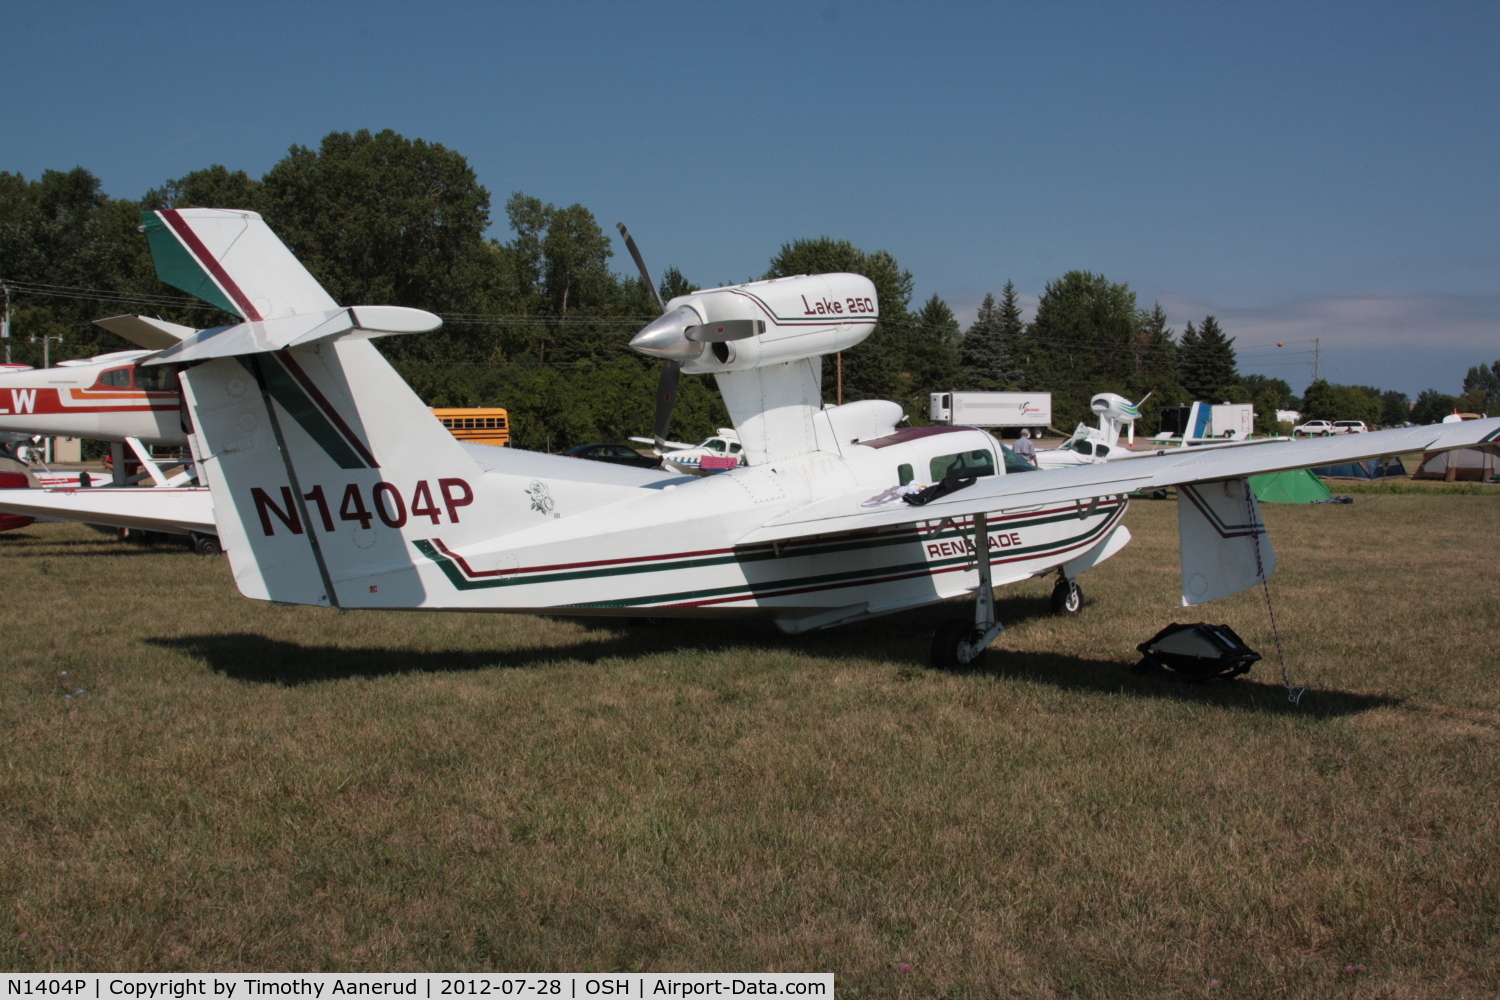 N1404P, 1986 Aerofab Inc Lake LA-250 C/N 42, 1986 Aerofab Inc Lake LA-250, c/n: 42